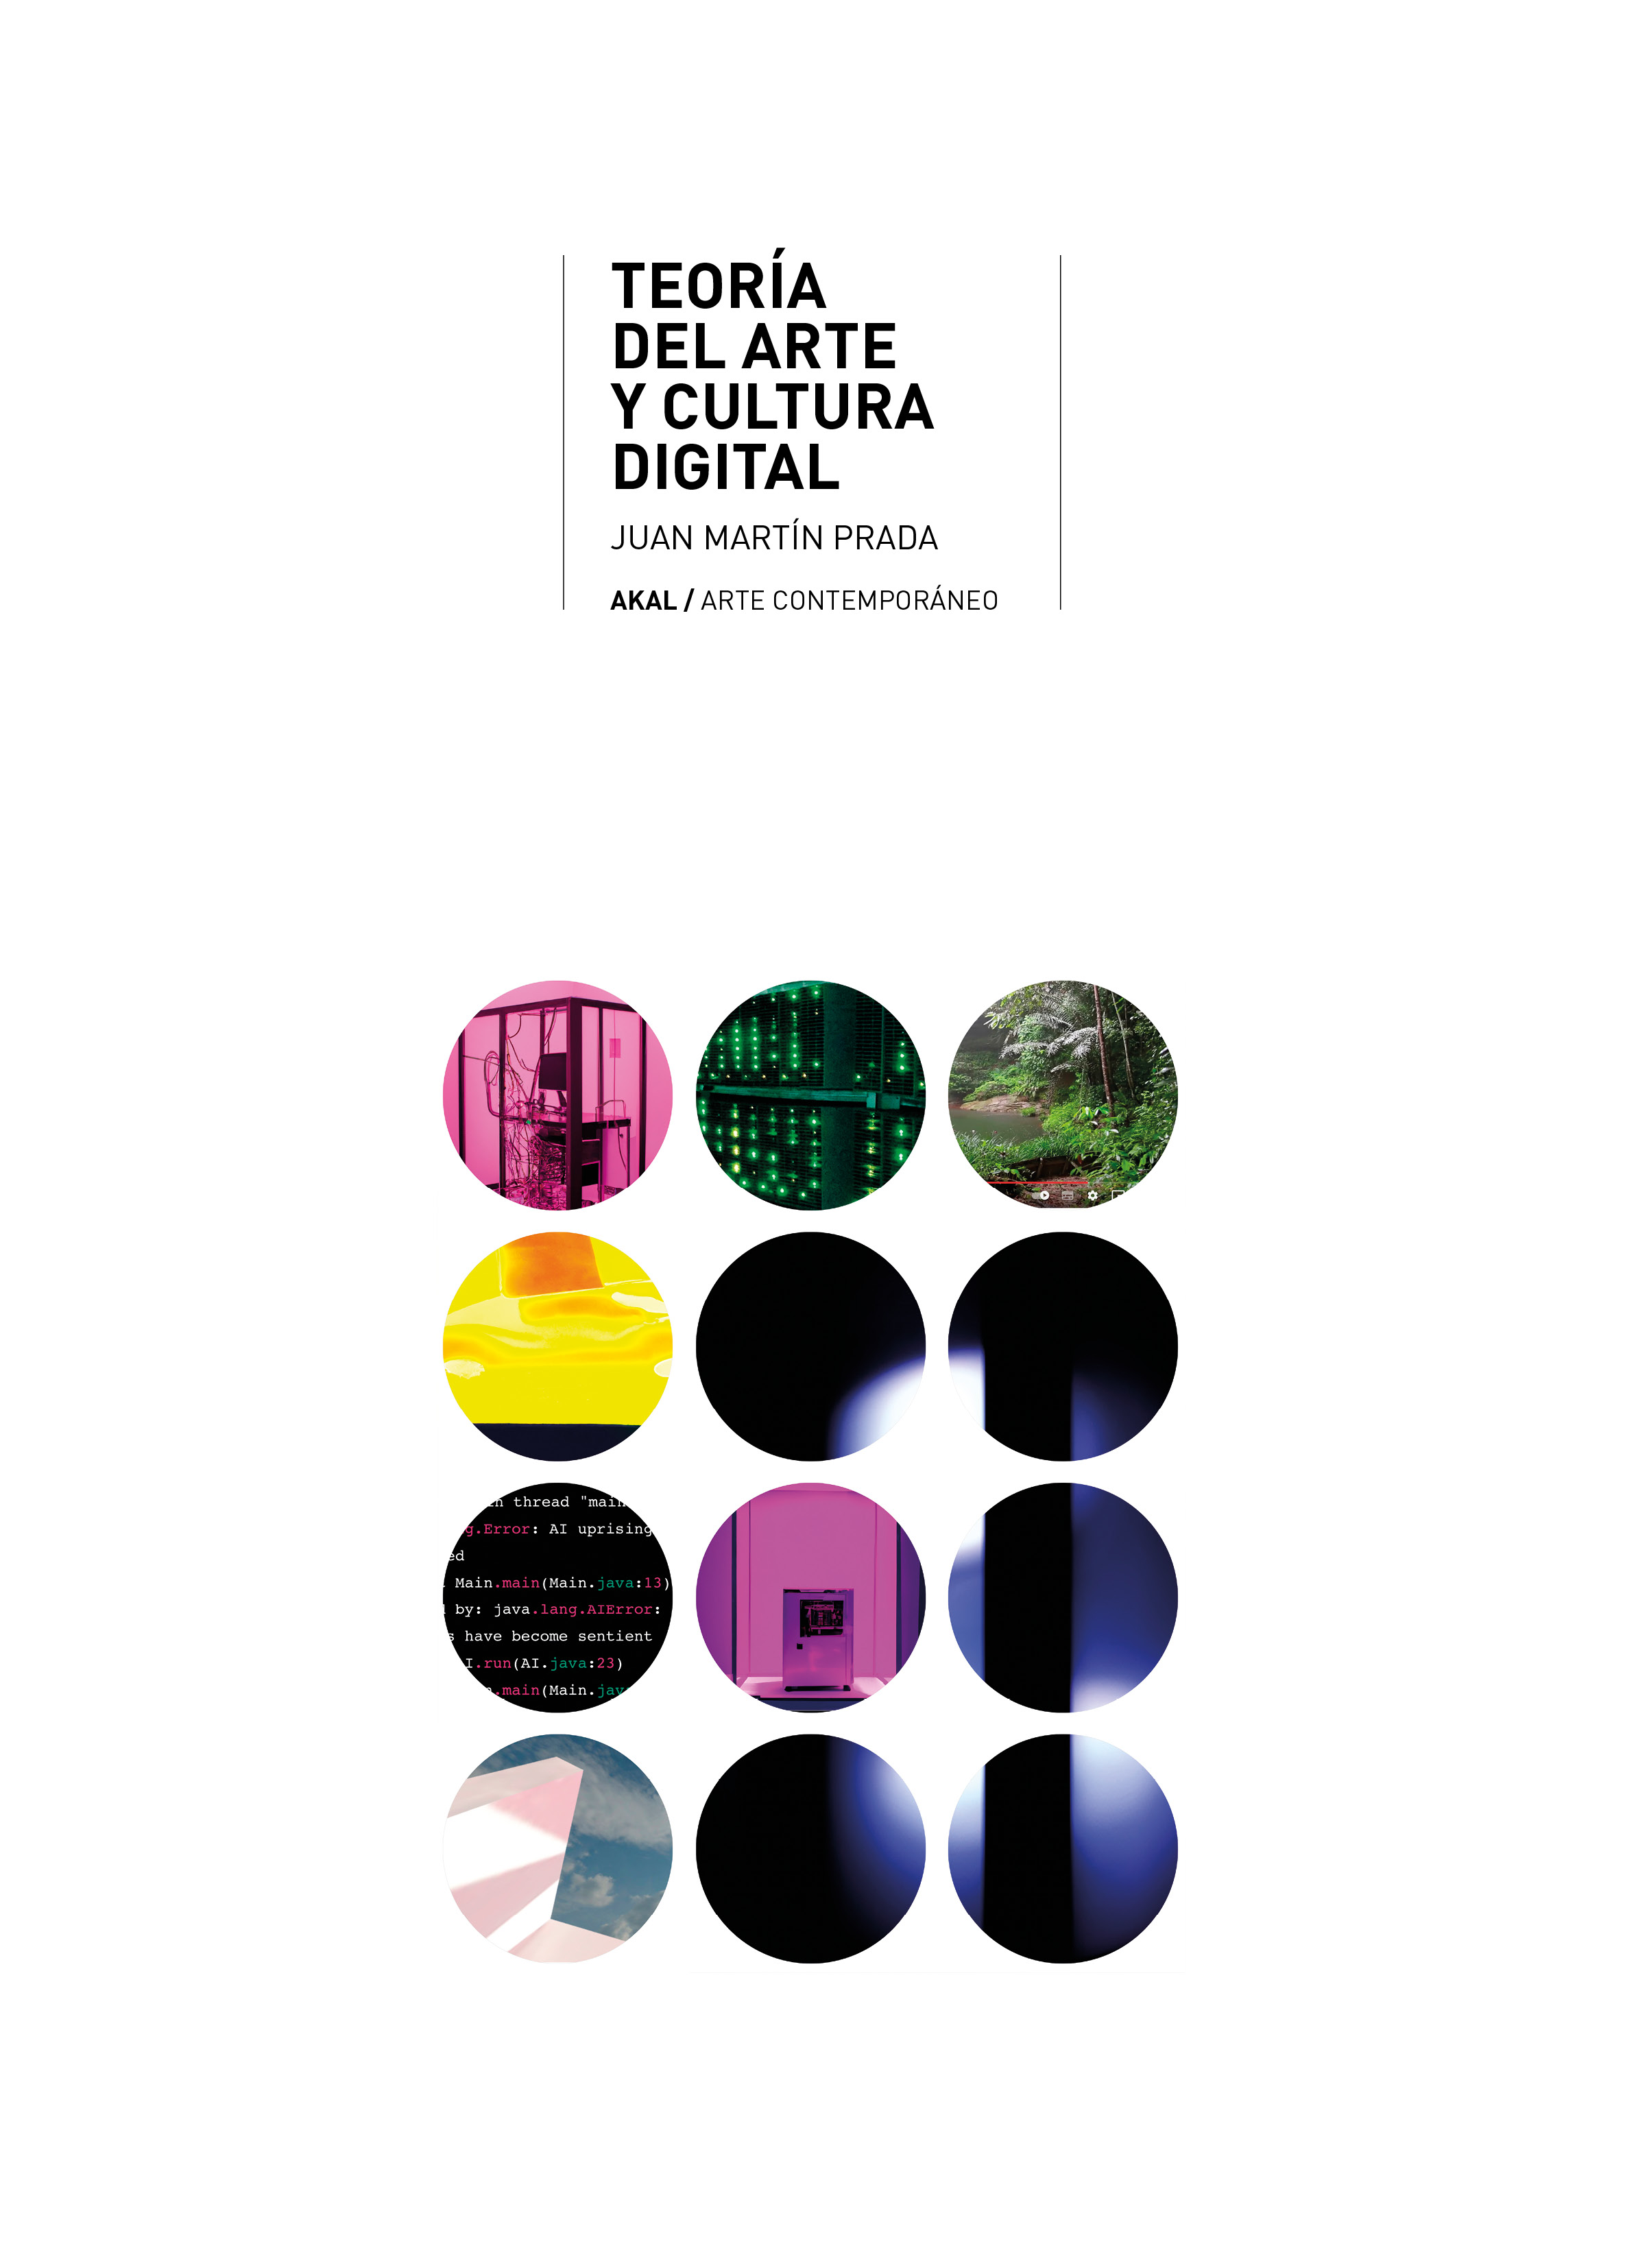 TEORÍA DEL ARTE Y CULTURA DIGITAL - Juan Martin Prada